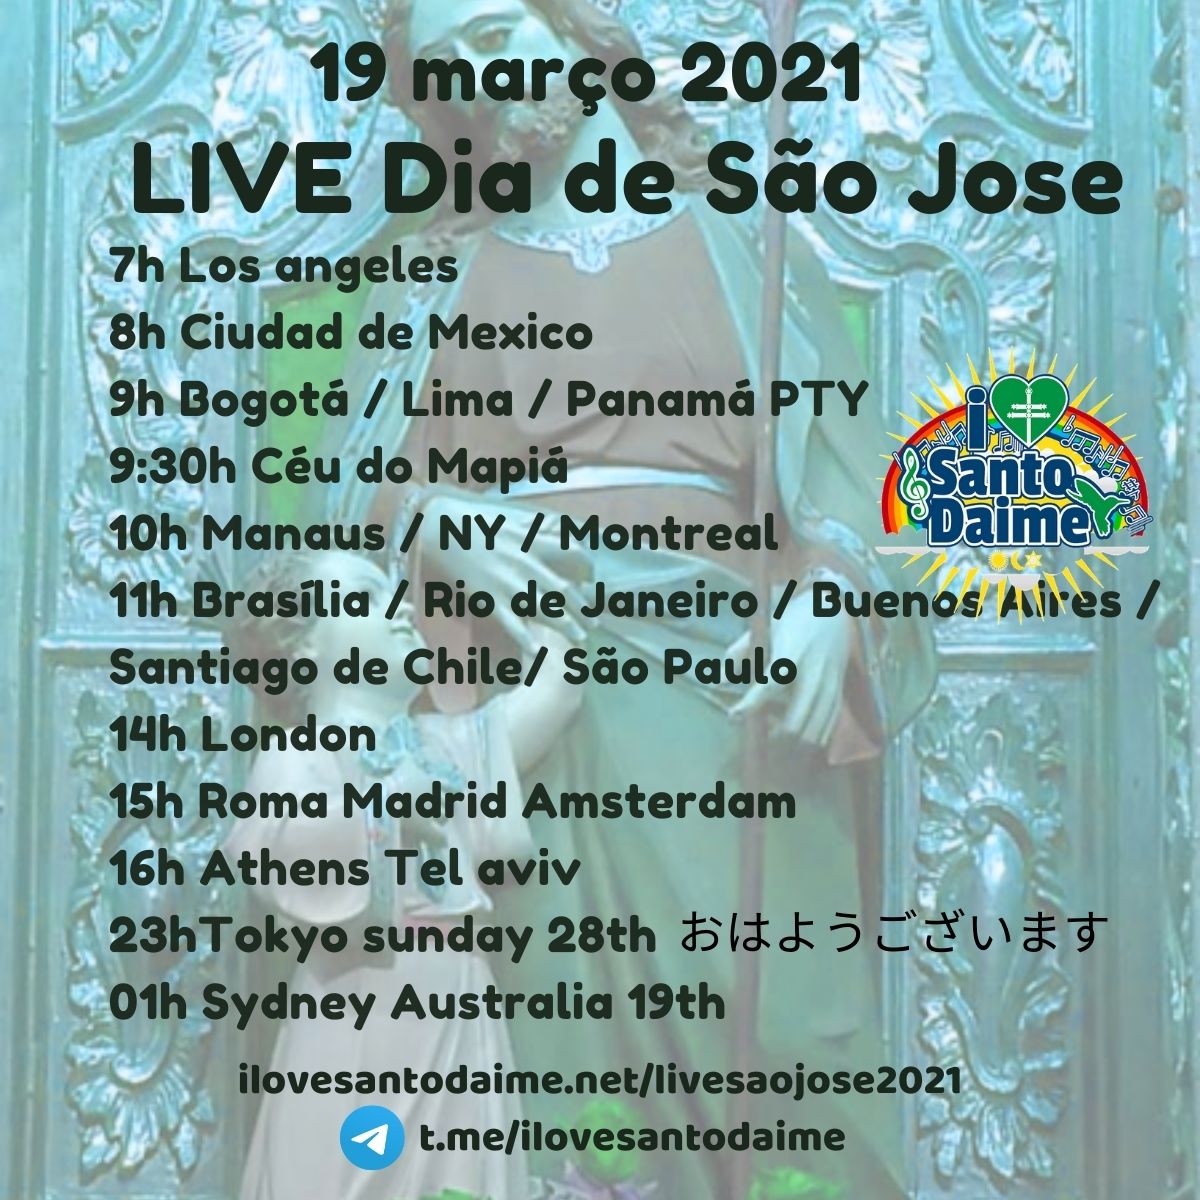 Live dia de São Jose 2021